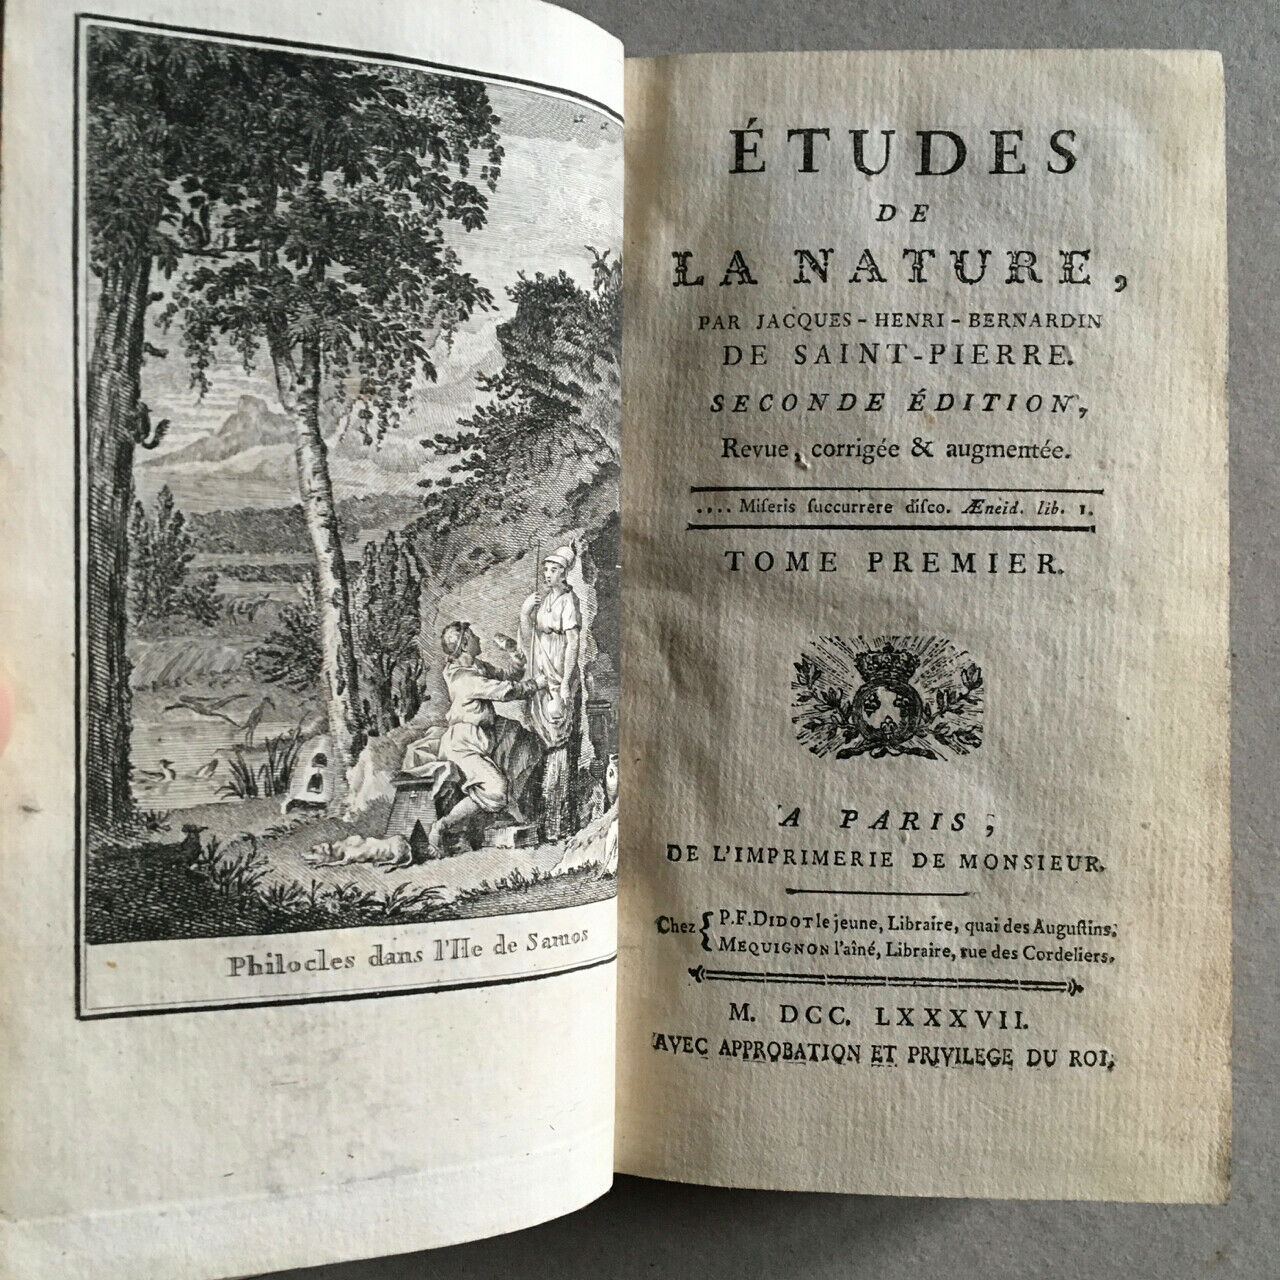 Bernardin de Saint-Pierre — Études de la nature / Paul & Virginie — Didot — 1787